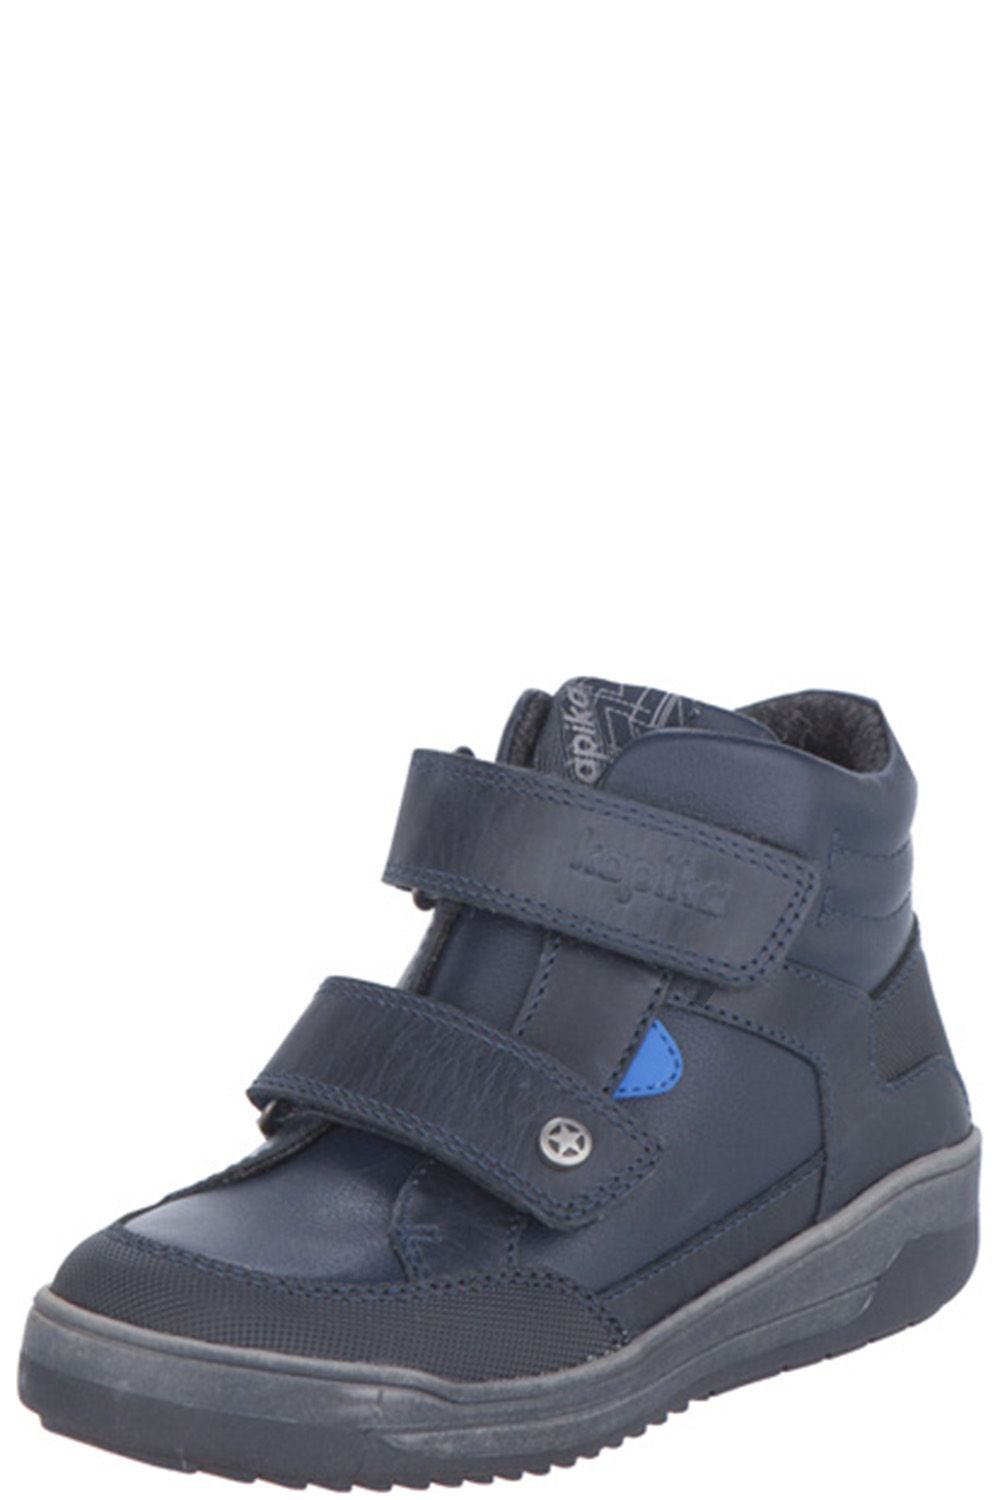 Ботинки Kapika, размер 29, цвет синий 52313y-2 - фото 1